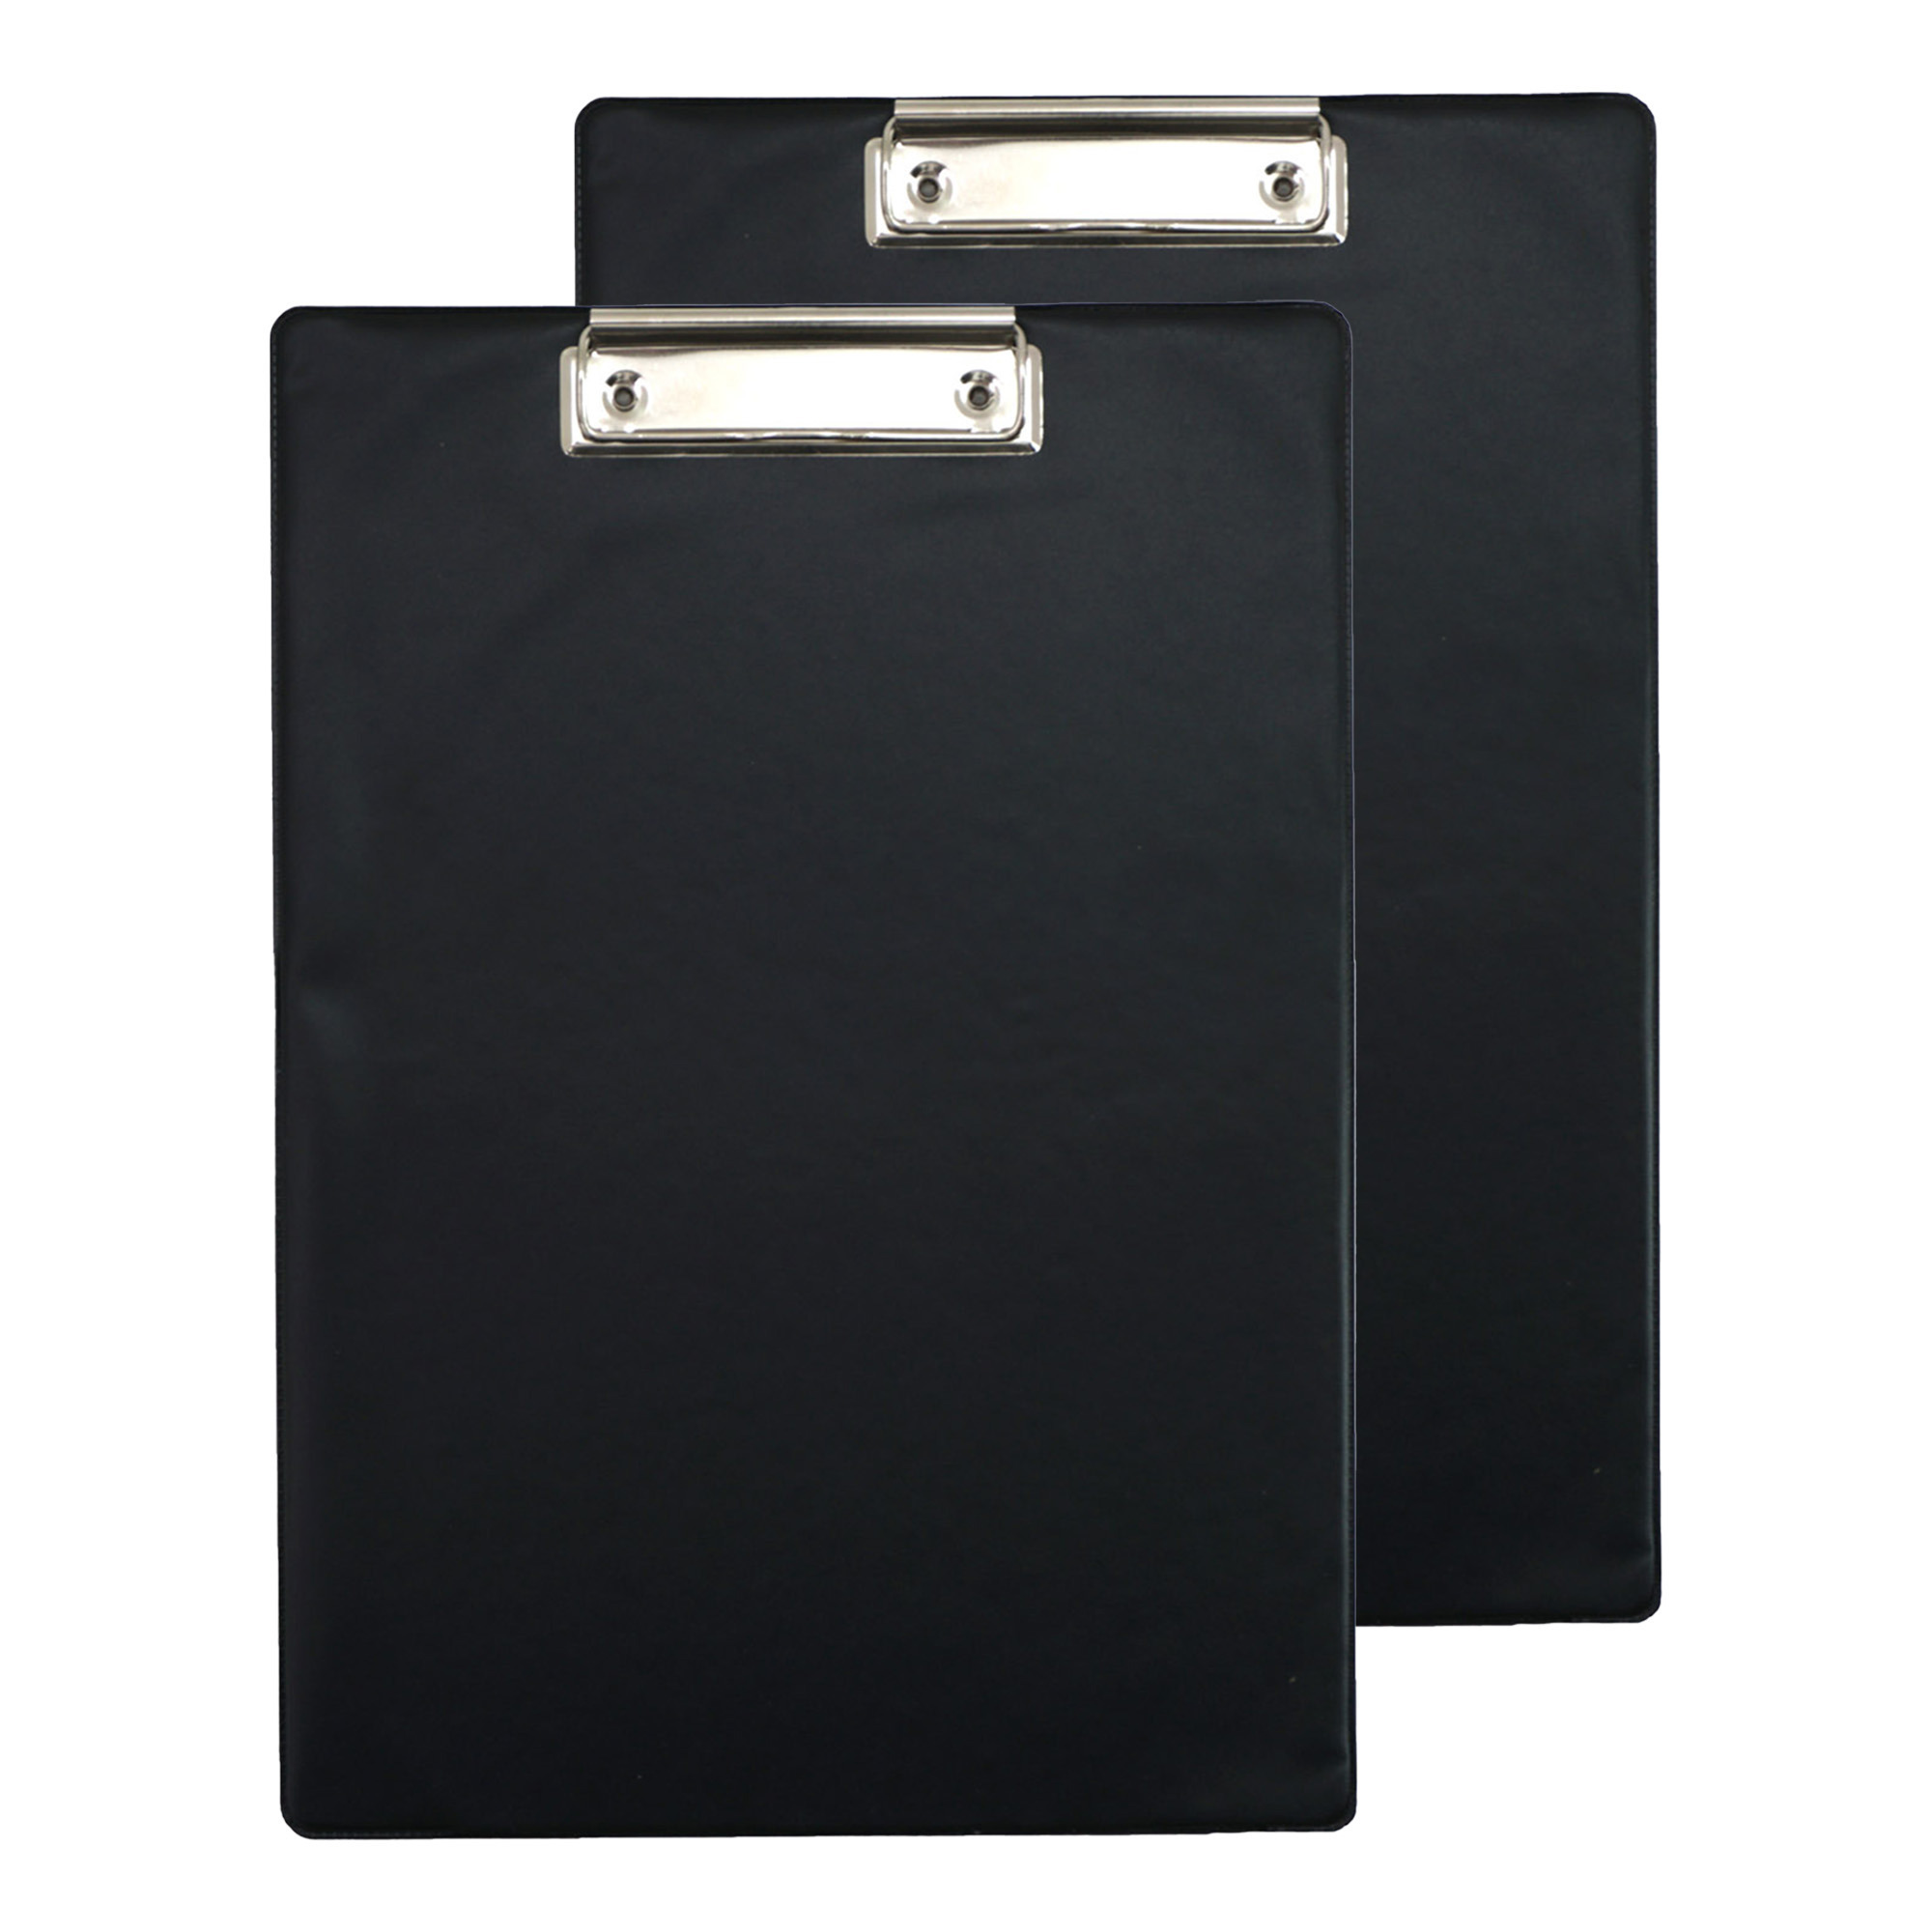 Clipboard-klembord-memobord voor documenten 2x zwart A4 formaat kunststof